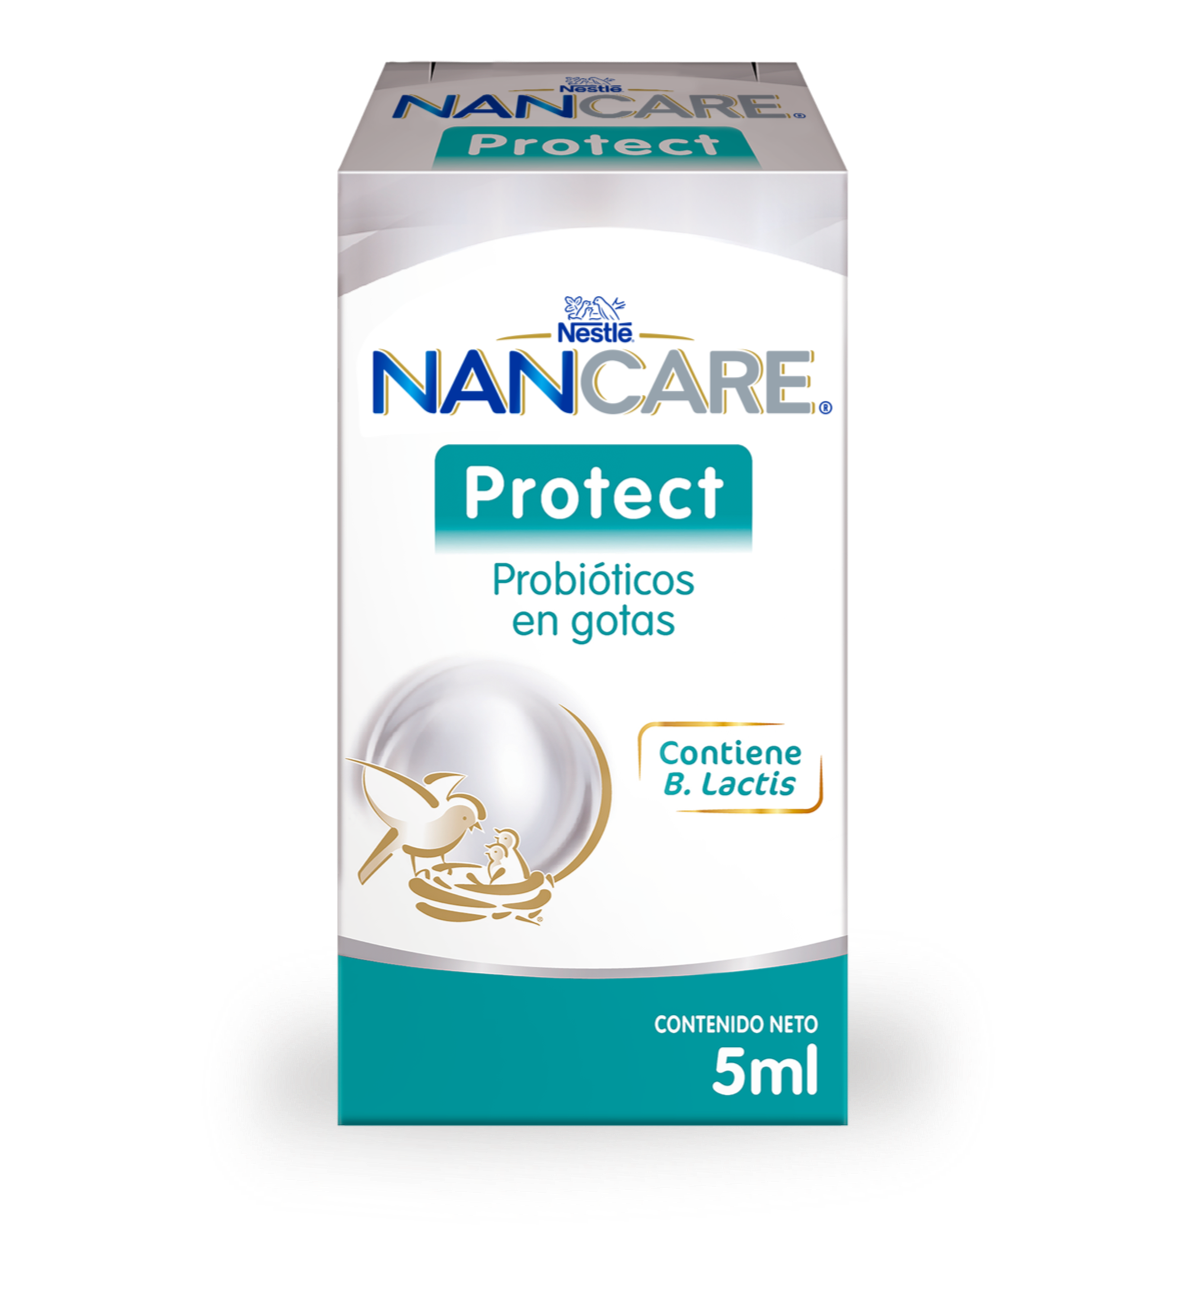 Nestlé® NANCARE PROTECT Probióticos en gotas contiene B. Lactis